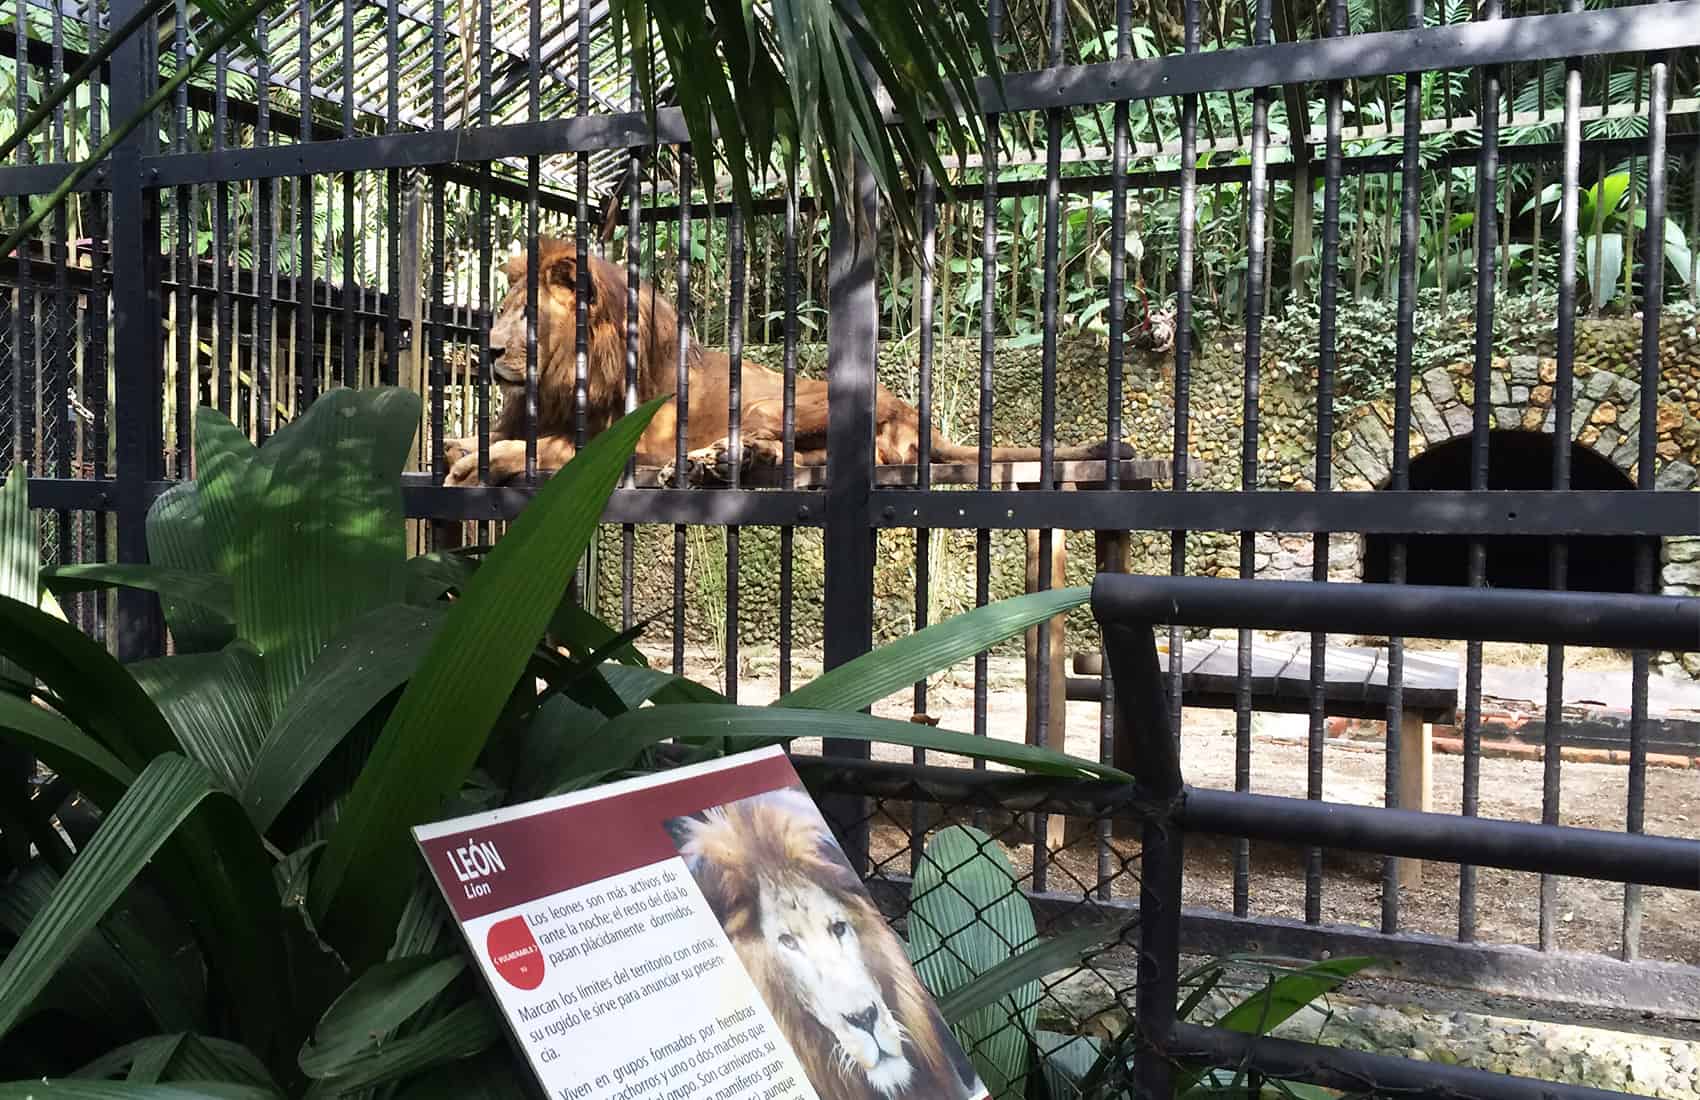 Kivú the lion at Simón Bolívar Zoo in San José, Costa Rica.